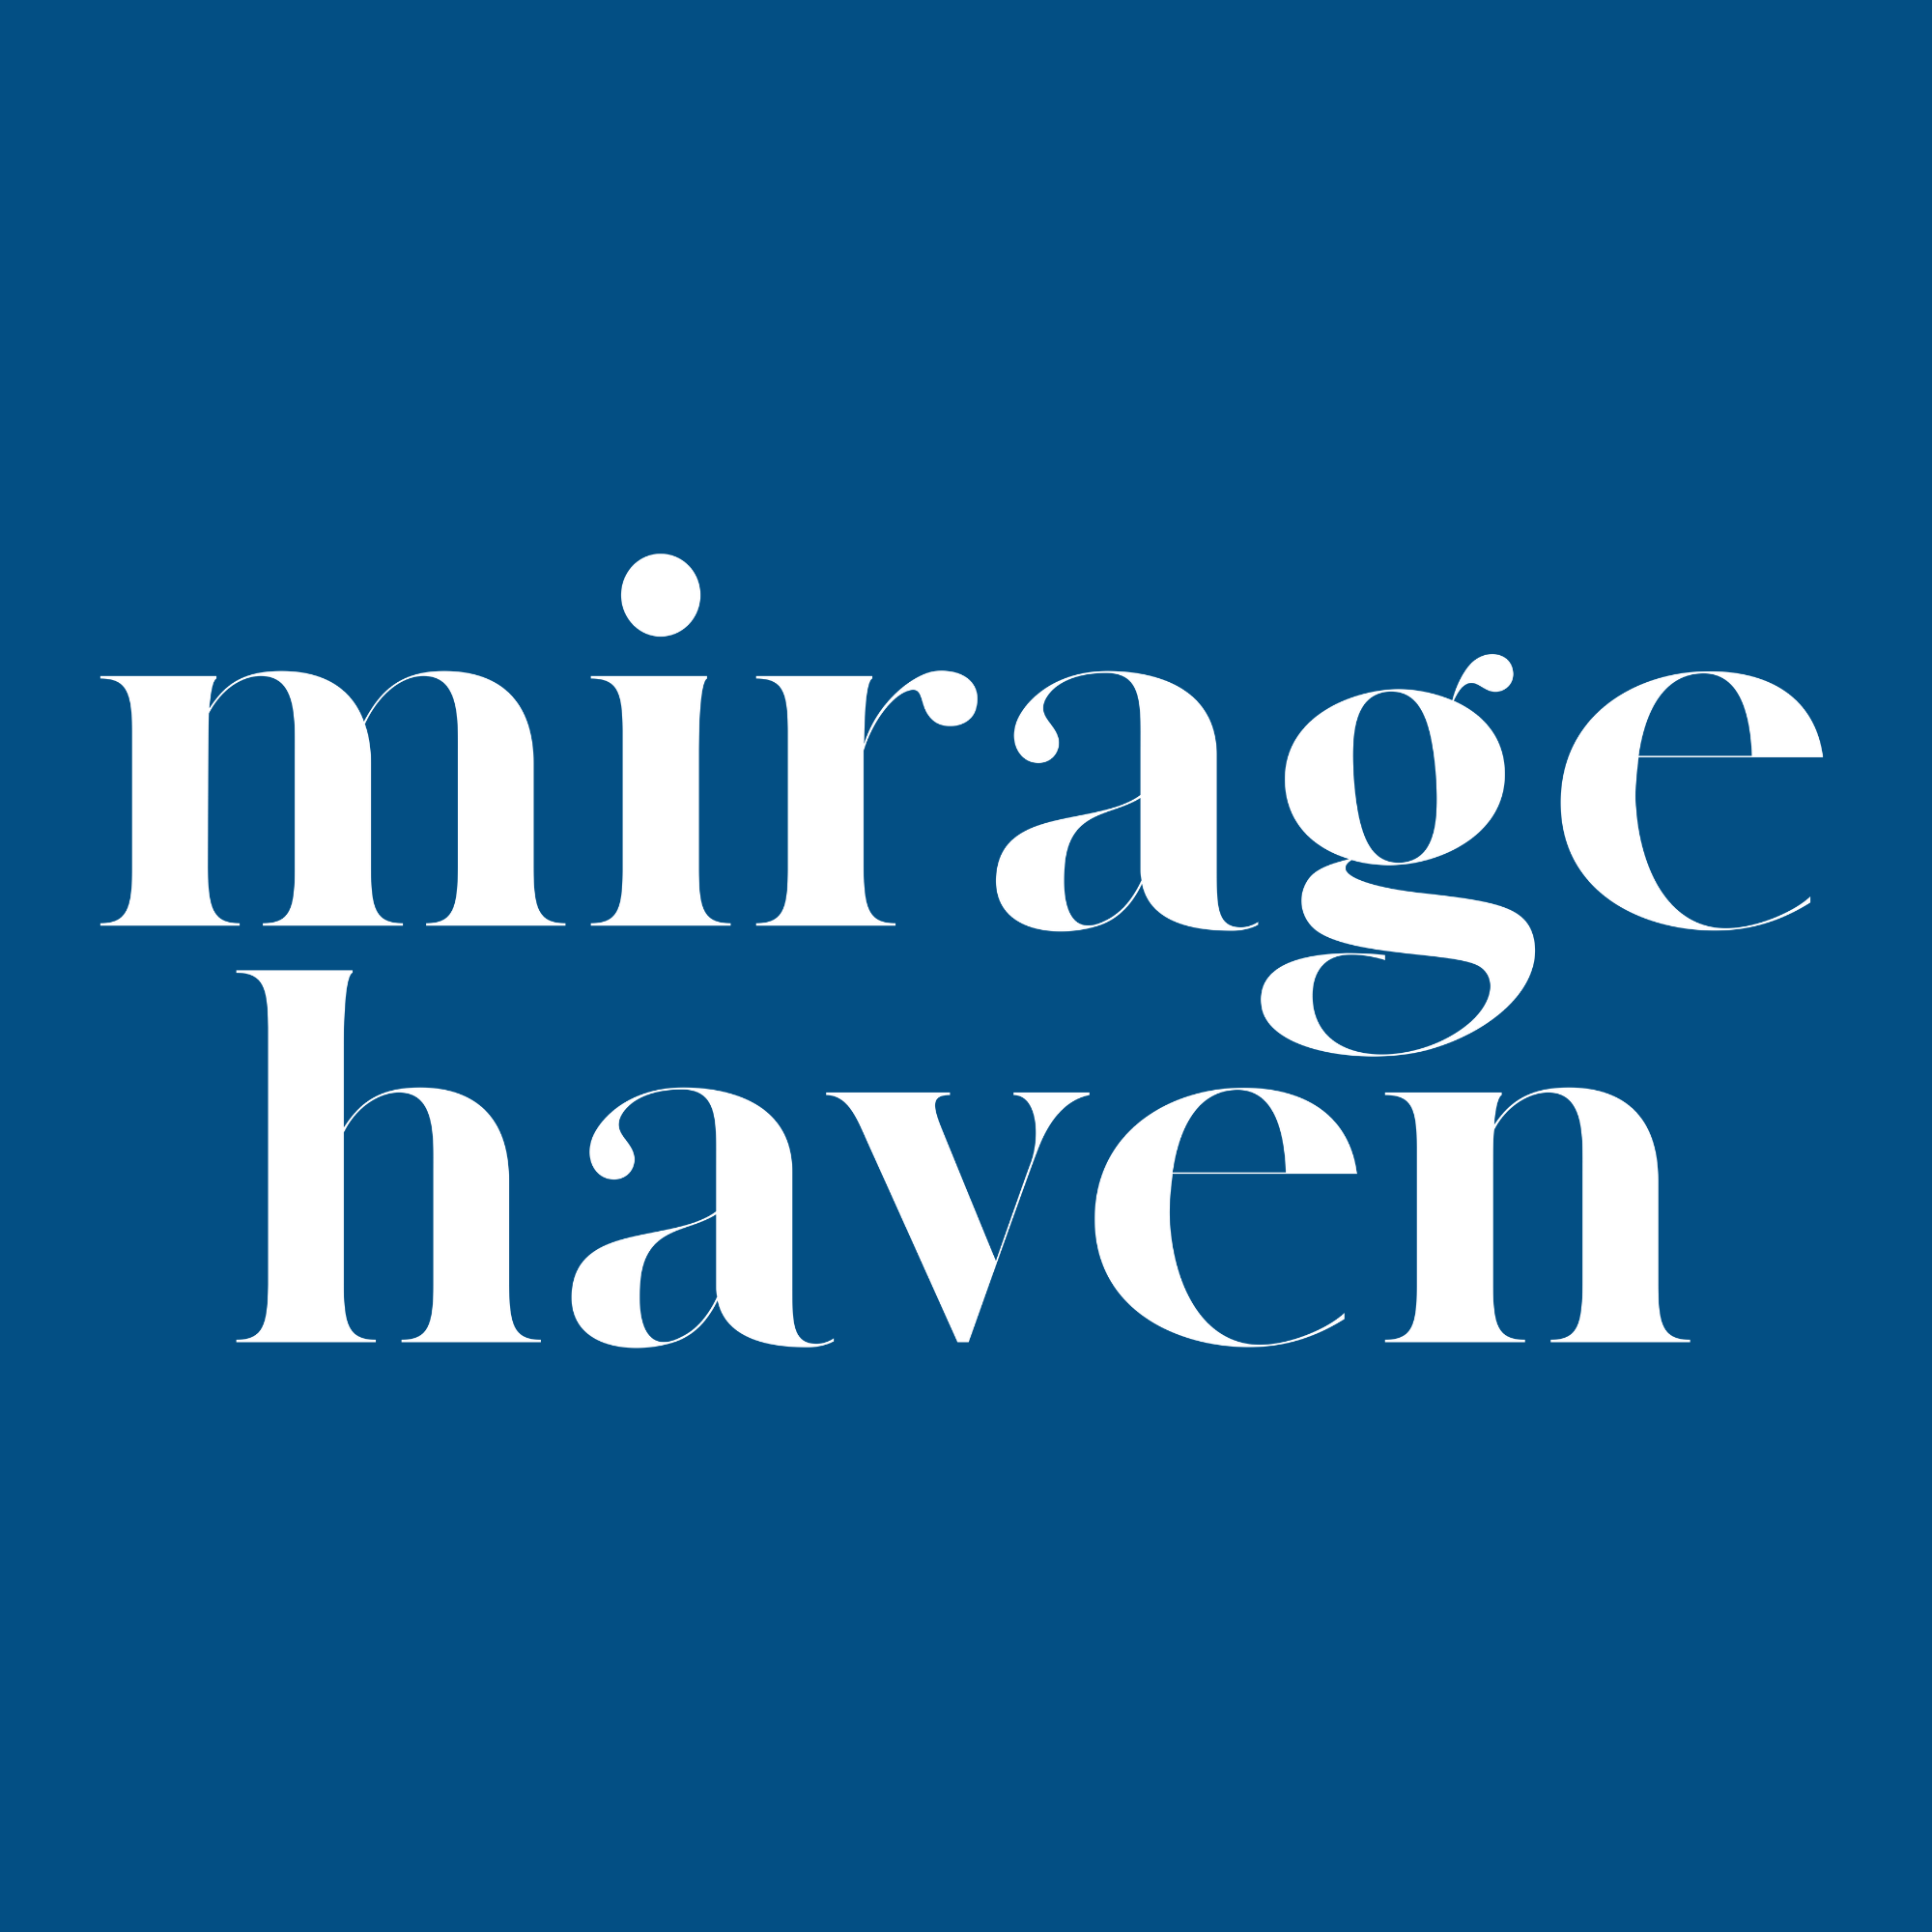 Mirage Haven